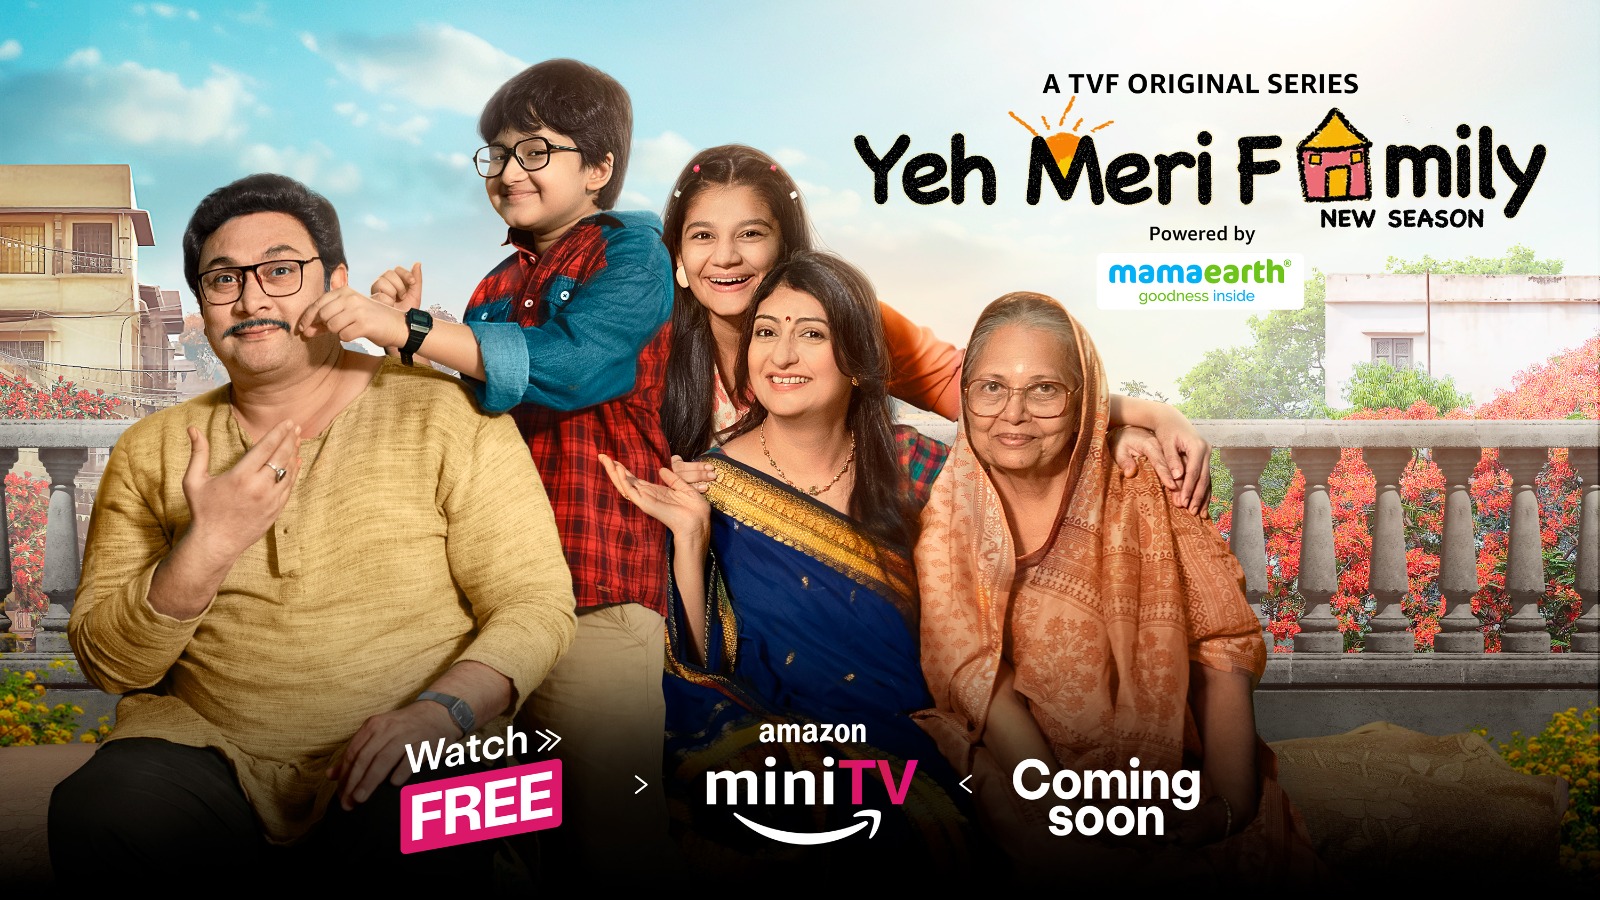 Yeh Meri Family returns with the third season on Amazon miniTV!